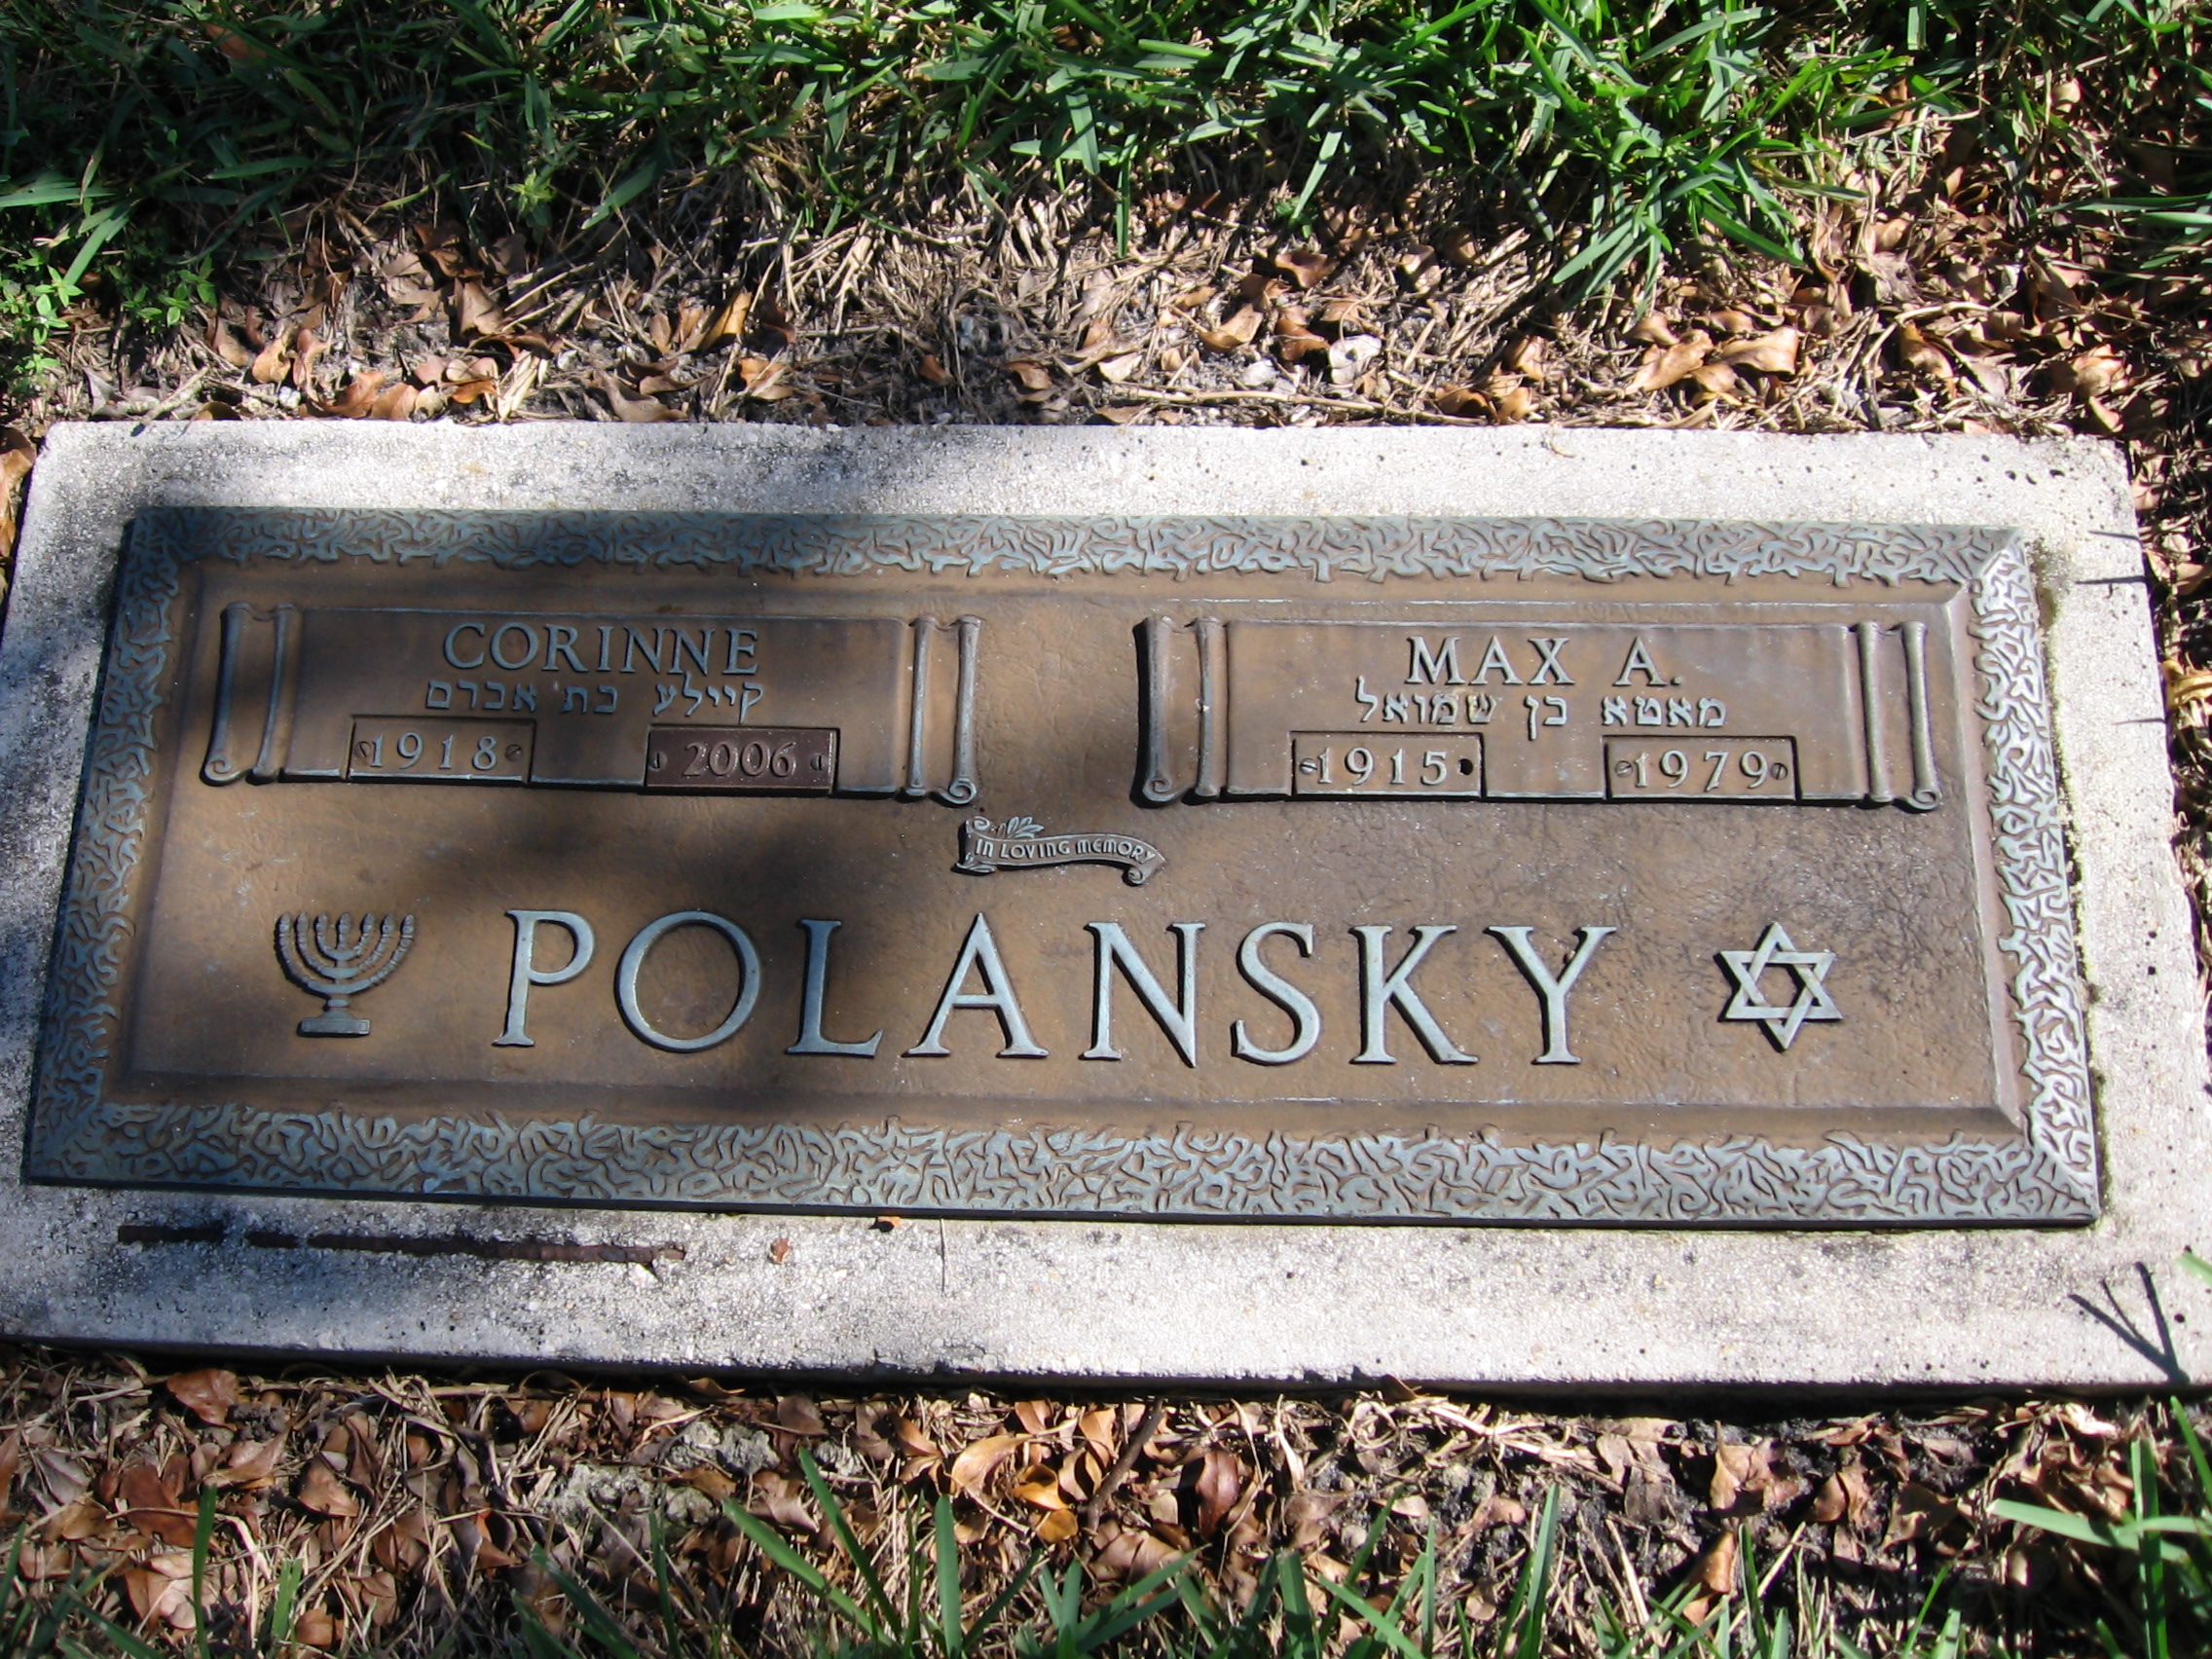 Max A Polansky